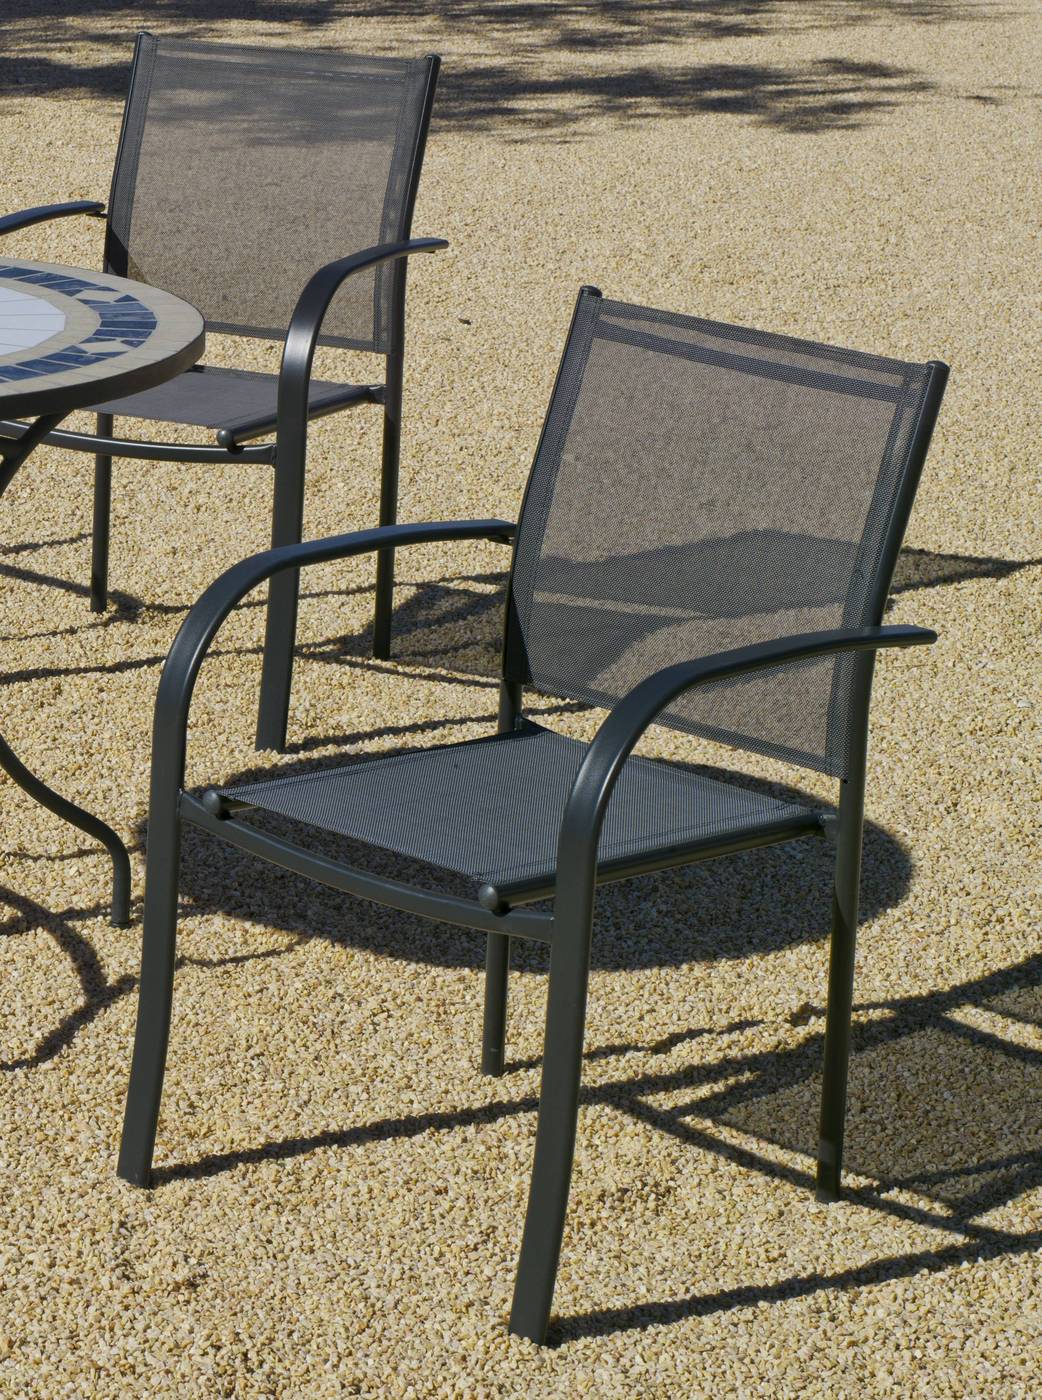 Conjunto Acero Europa-90 - Conjunto de acero color antracita: mesa redonda de 90 cm. Con tapa de cristal templado + 4 sillones de acero y textilen